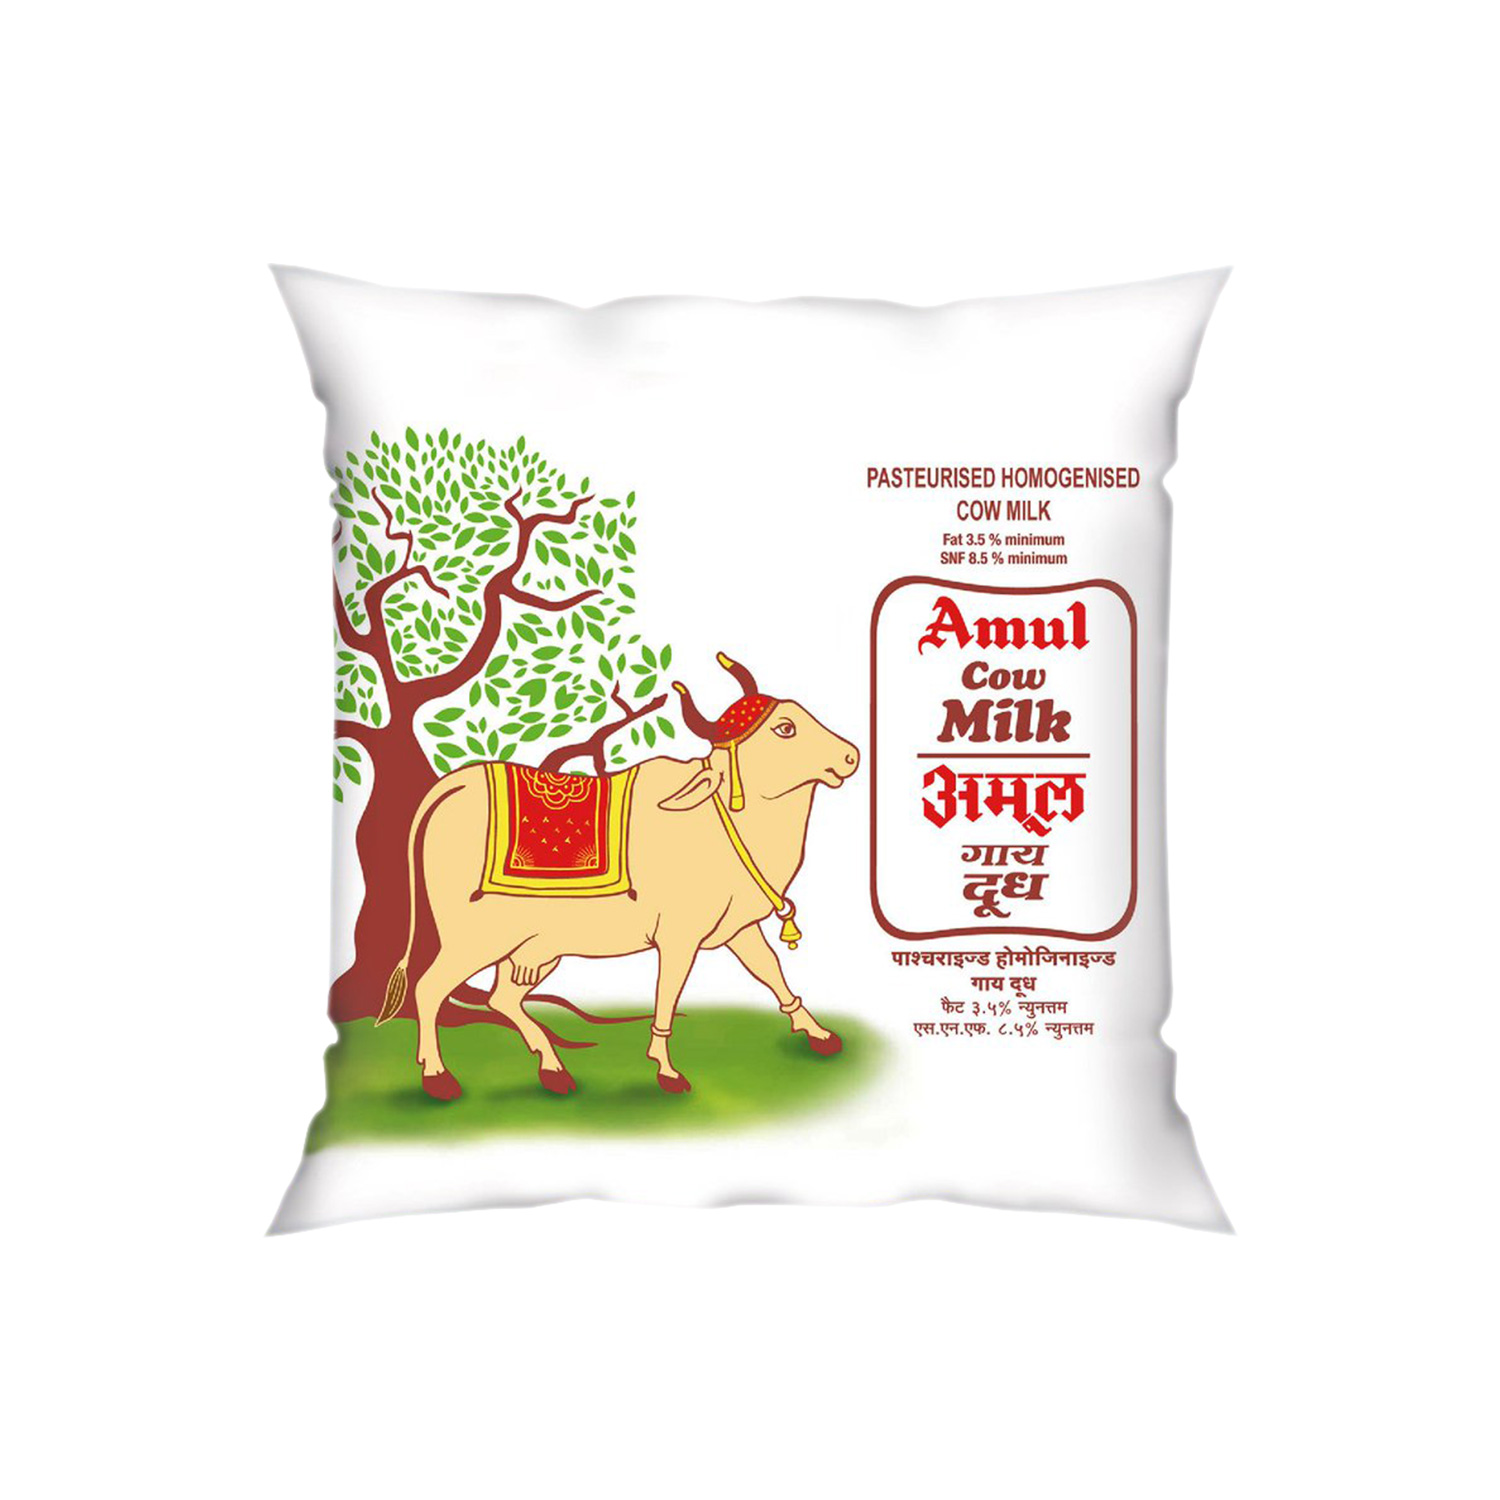 Amul Cow Milk Pouch